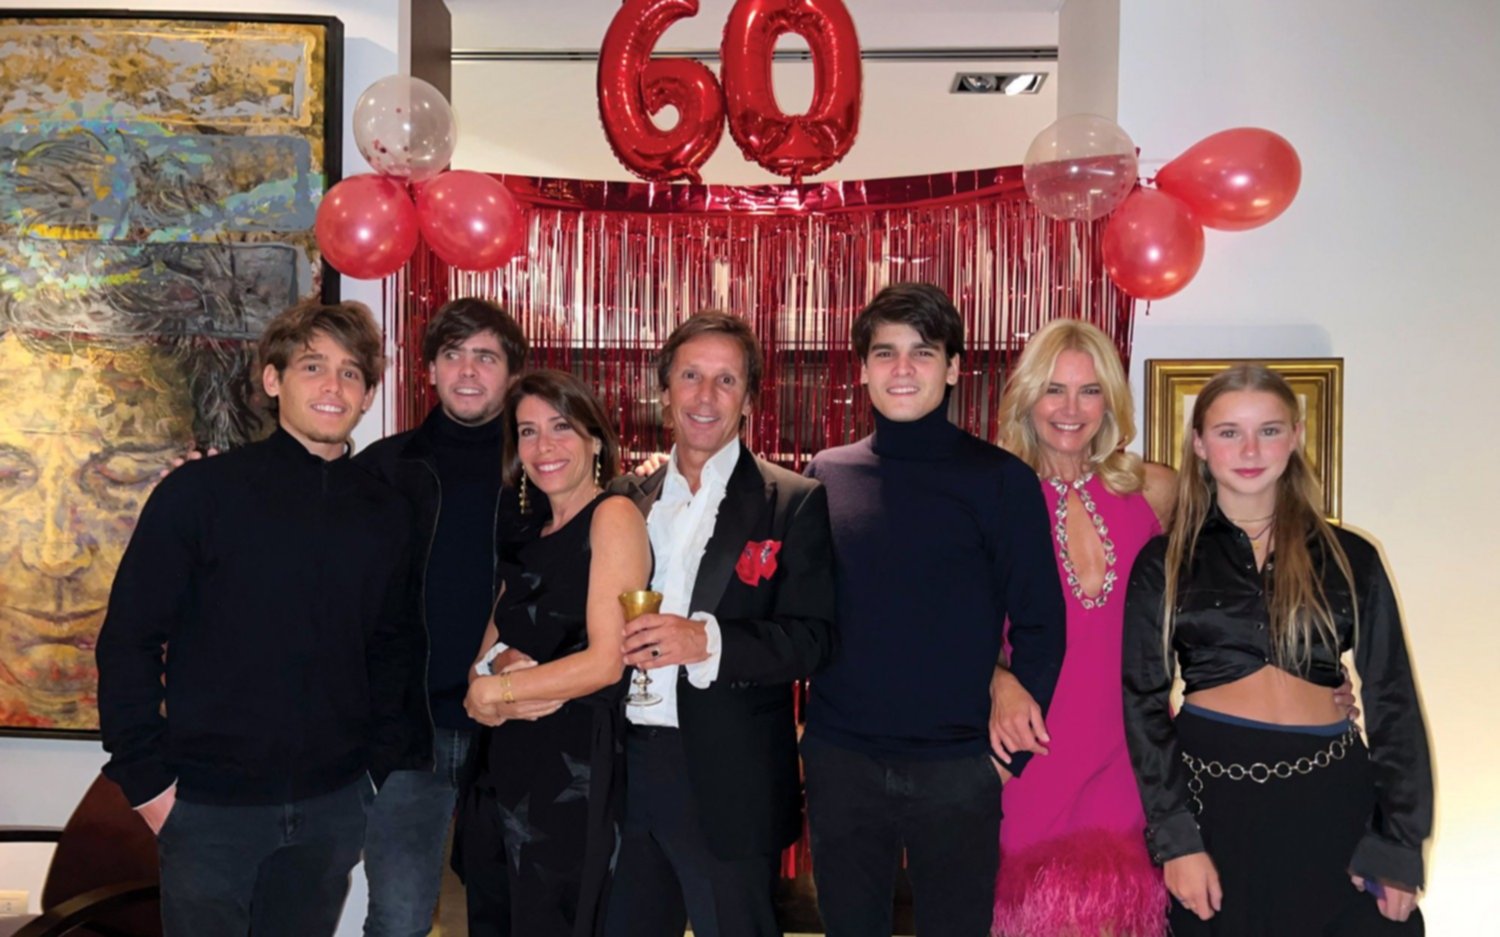 Los 60 de Alejandro Gravier: los festejos organizados por Valeria Mazza 